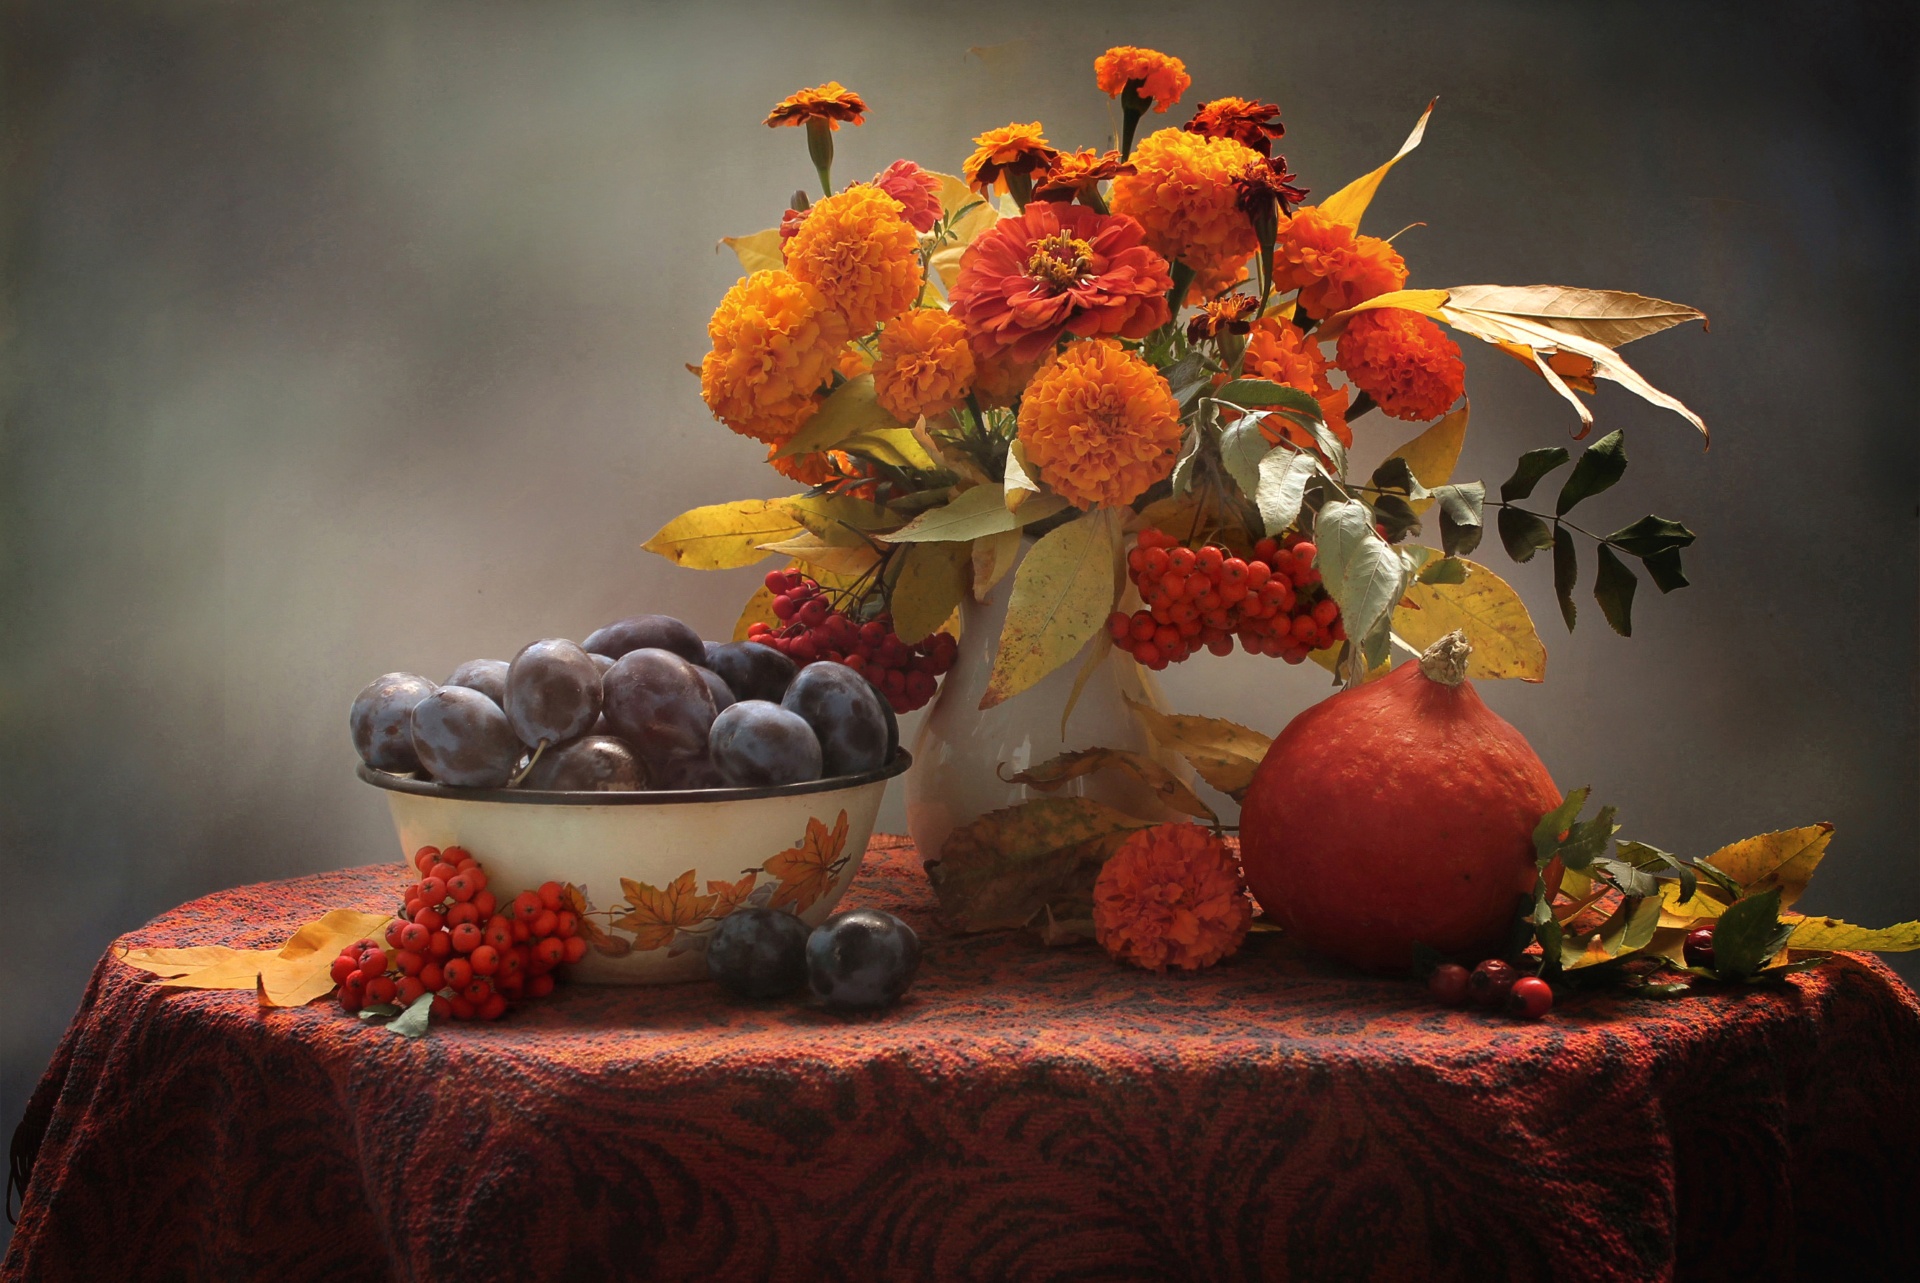 photography, still life, fall, flower, fruit, marigold, orange flower, plum, pumpkin